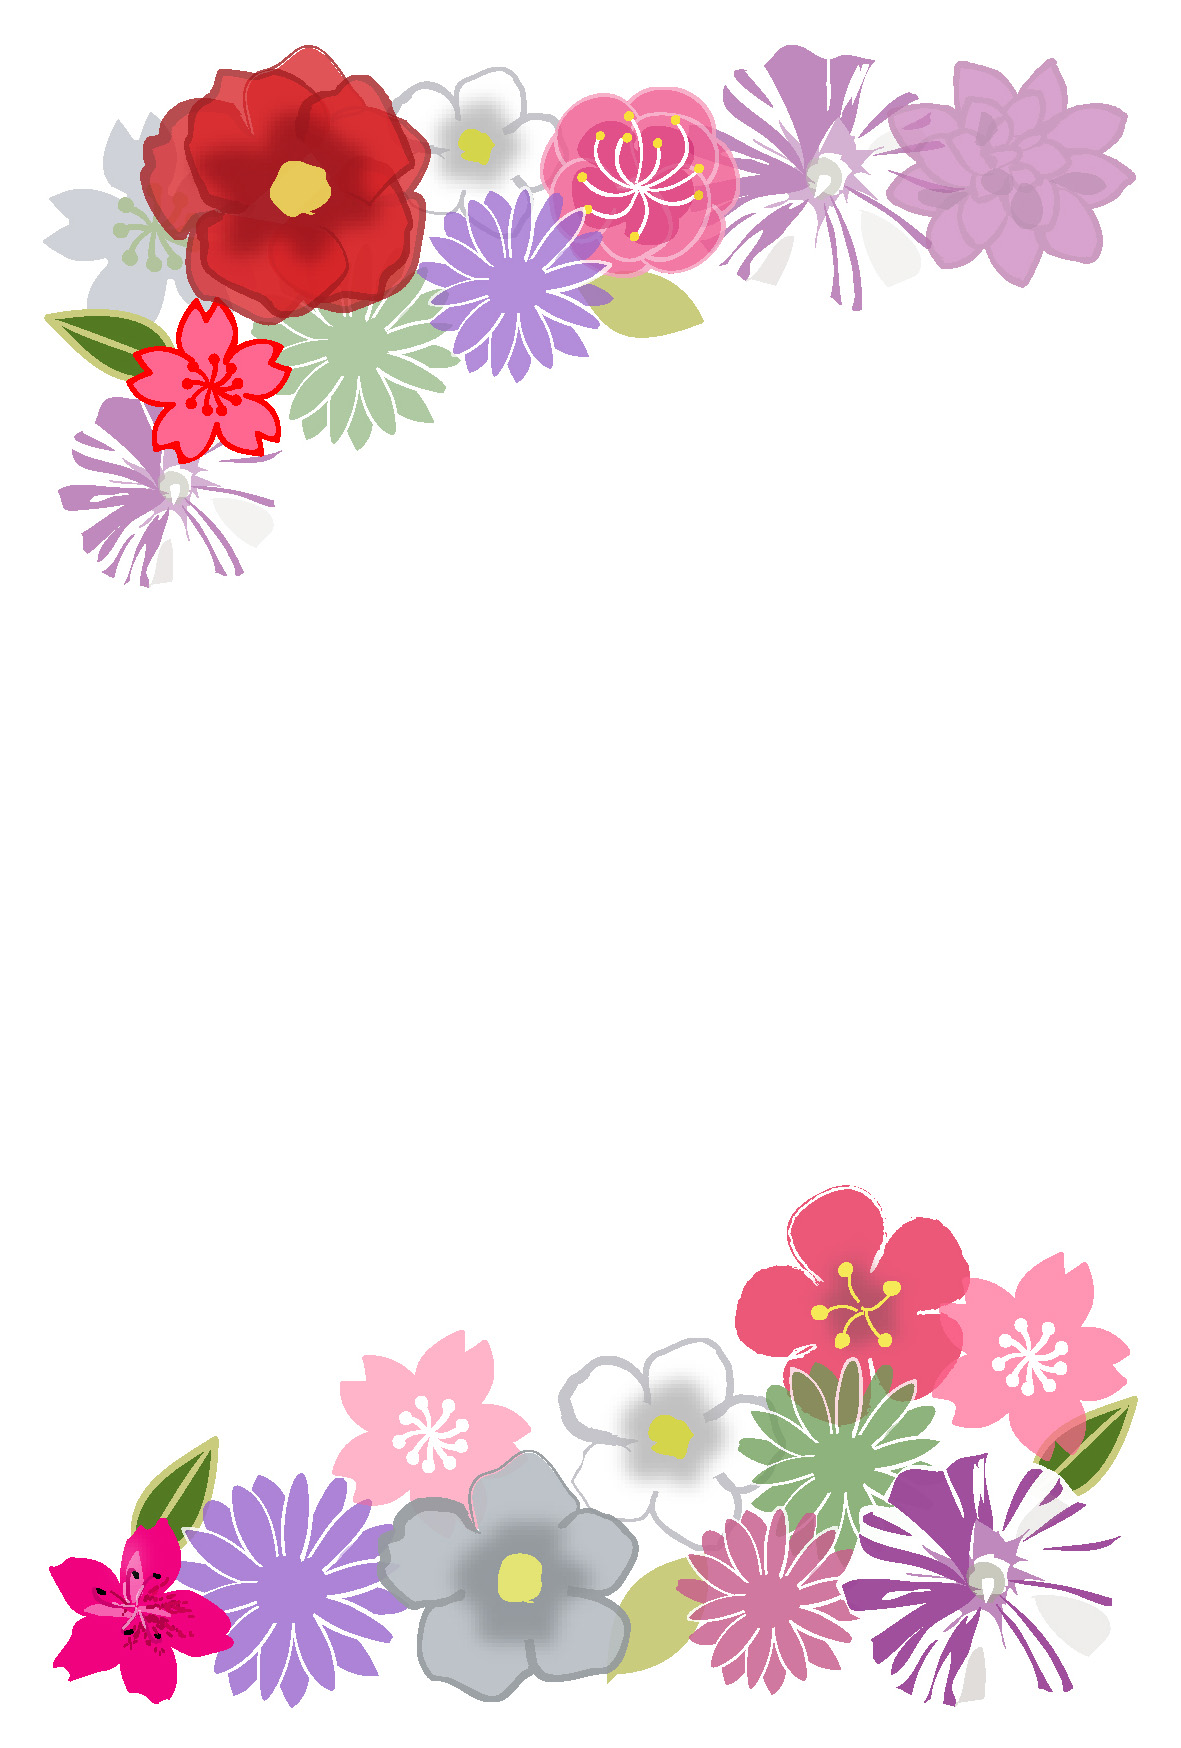 椿や朝顔 和風のお花のイラストのポストカードテンプレートです 和風の絵はがき テンプレート フォーマット素材画像集 多目的 葉書 お手紙 Naver まとめ